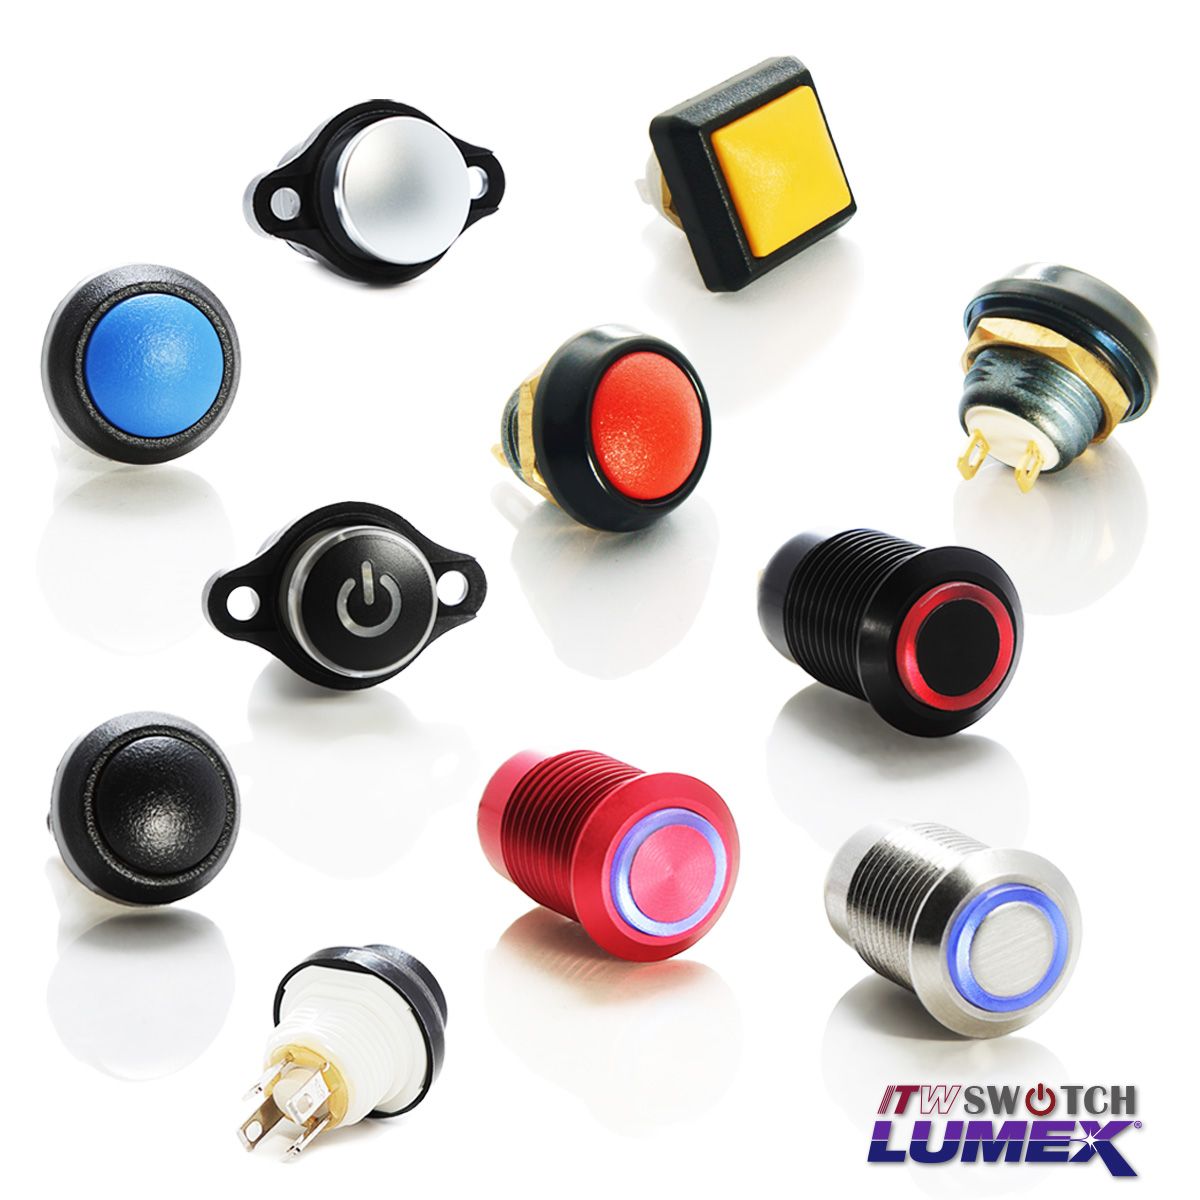 ITW Lumex Switchпредлагает различные конструкции кнопок, которые можно установить в вырез панели толщиной 12 мм.